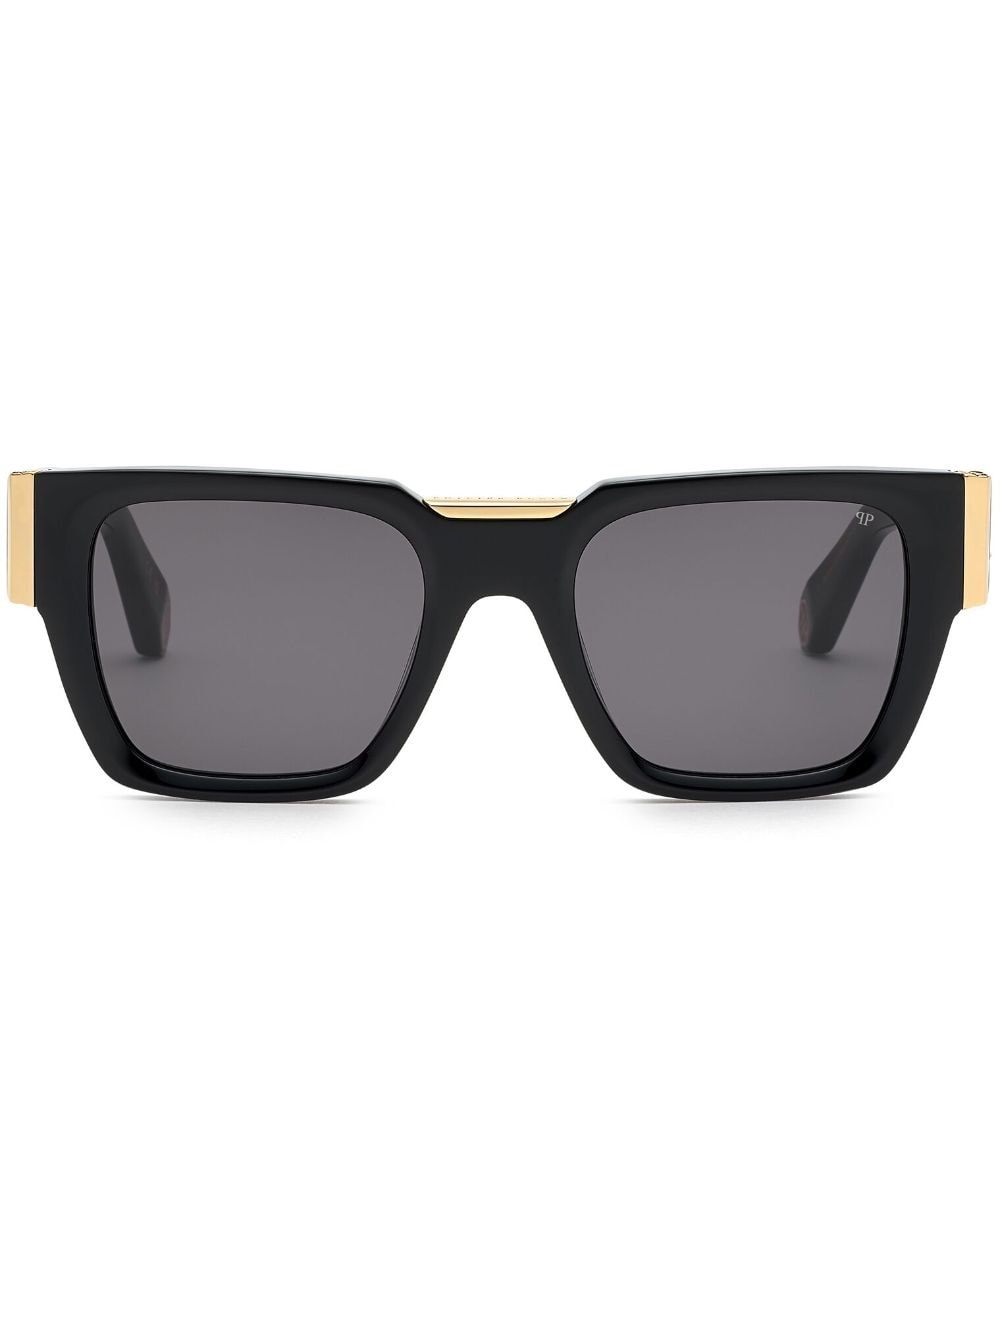 logo-plaque square-frame sunglasses - 1